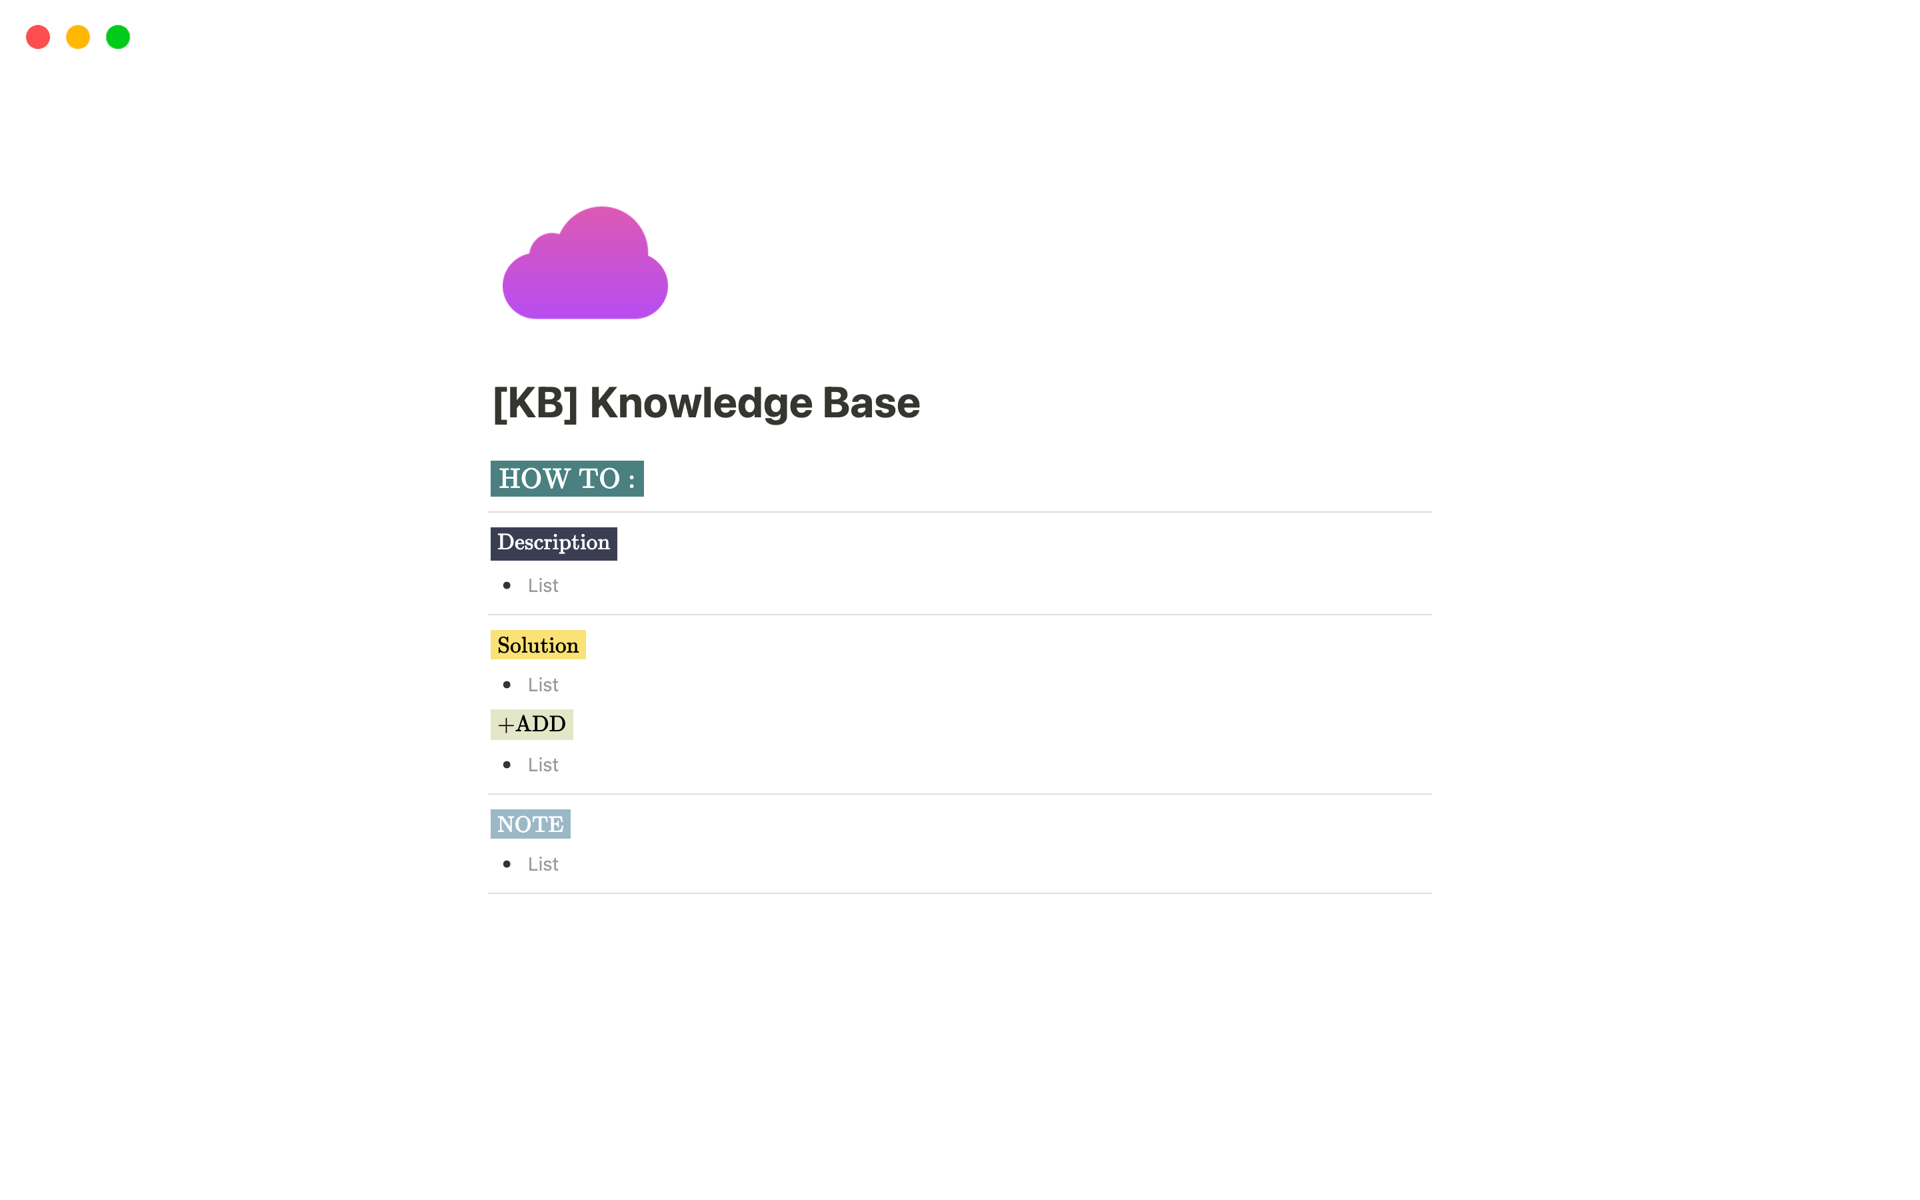 Vista previa de una plantilla para [KB] Knowledge Base 